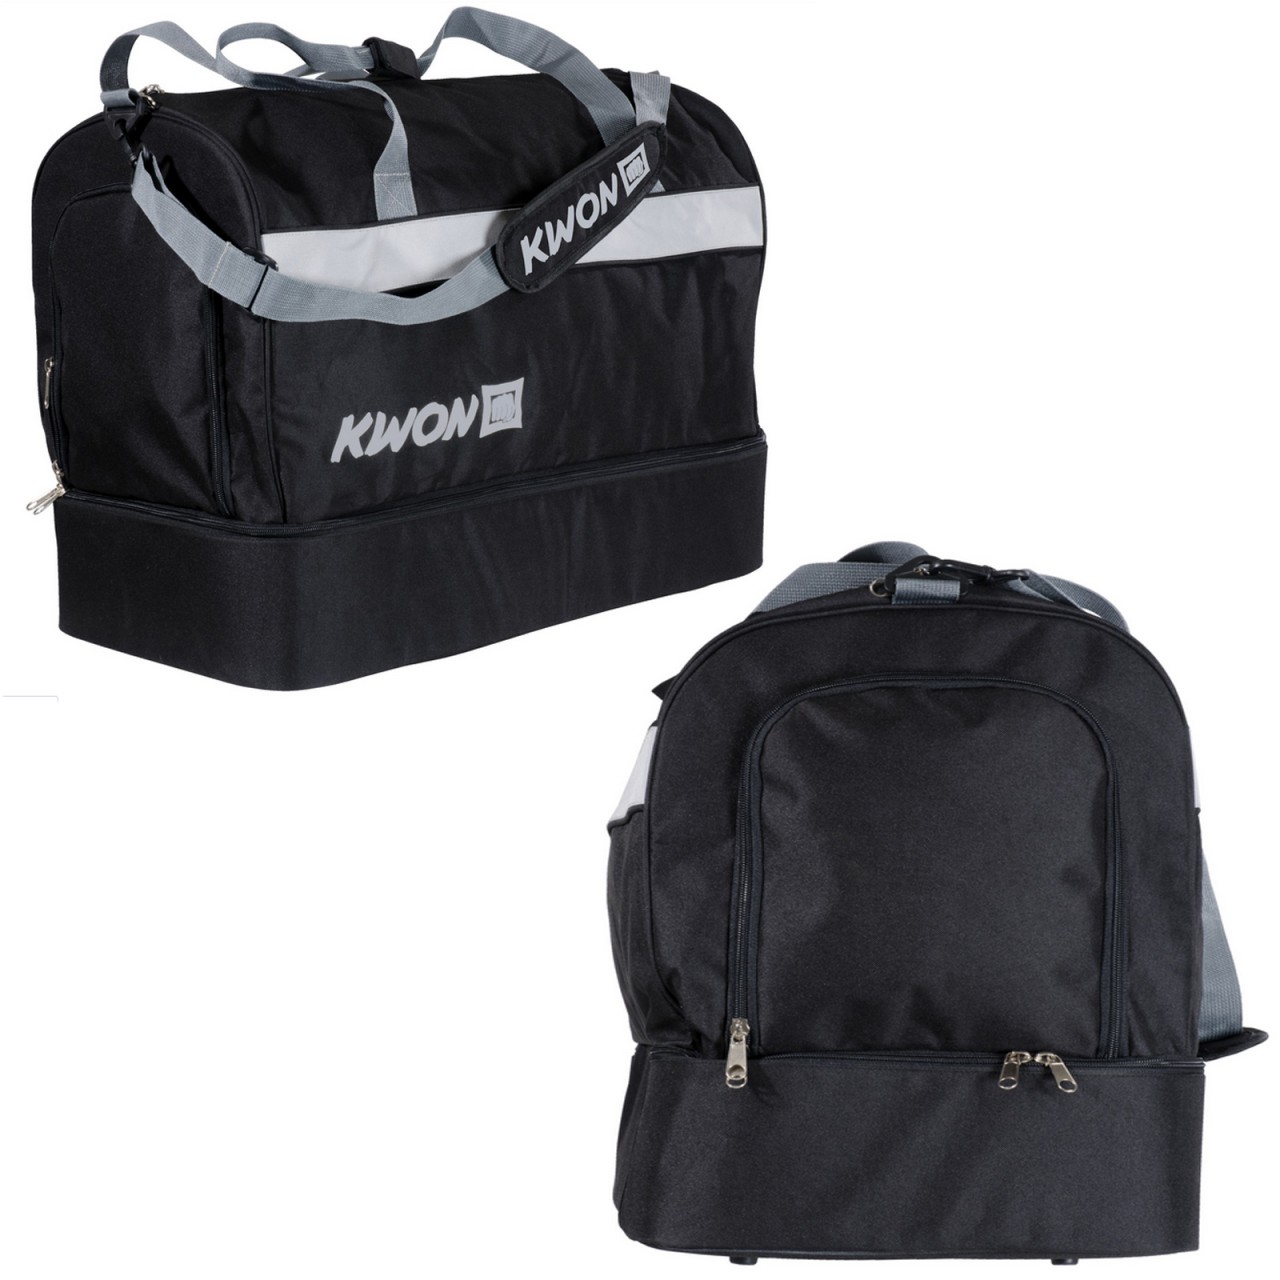 Kwon Sporttasche Kompakt mit Bodenfach von KWON KG